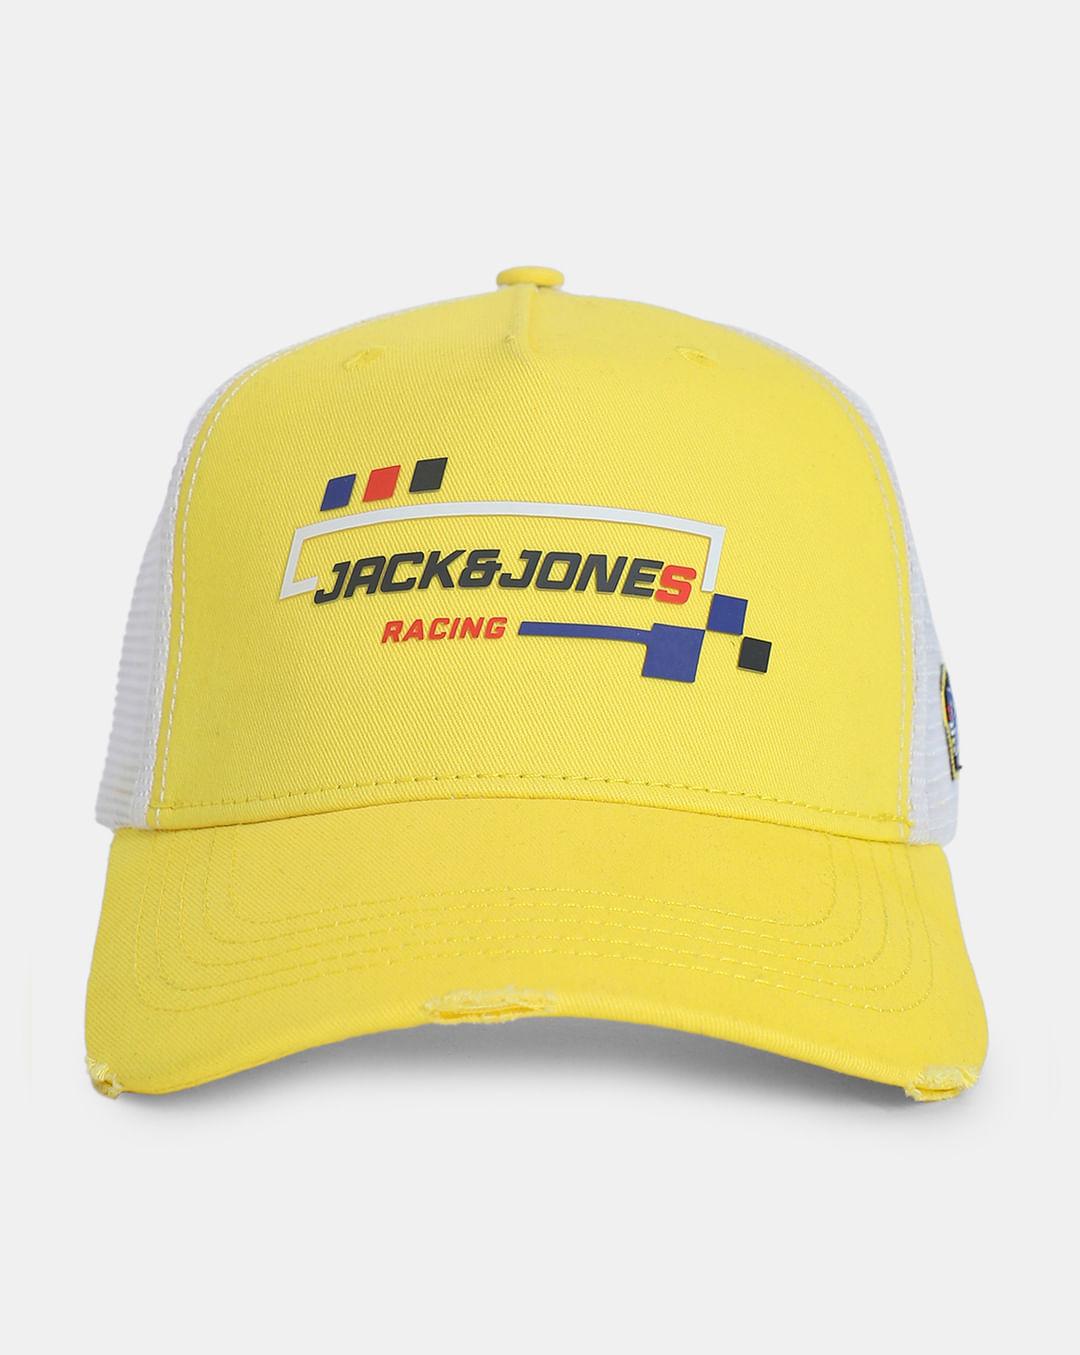 urban racers by jack&jones yellow trucker cap